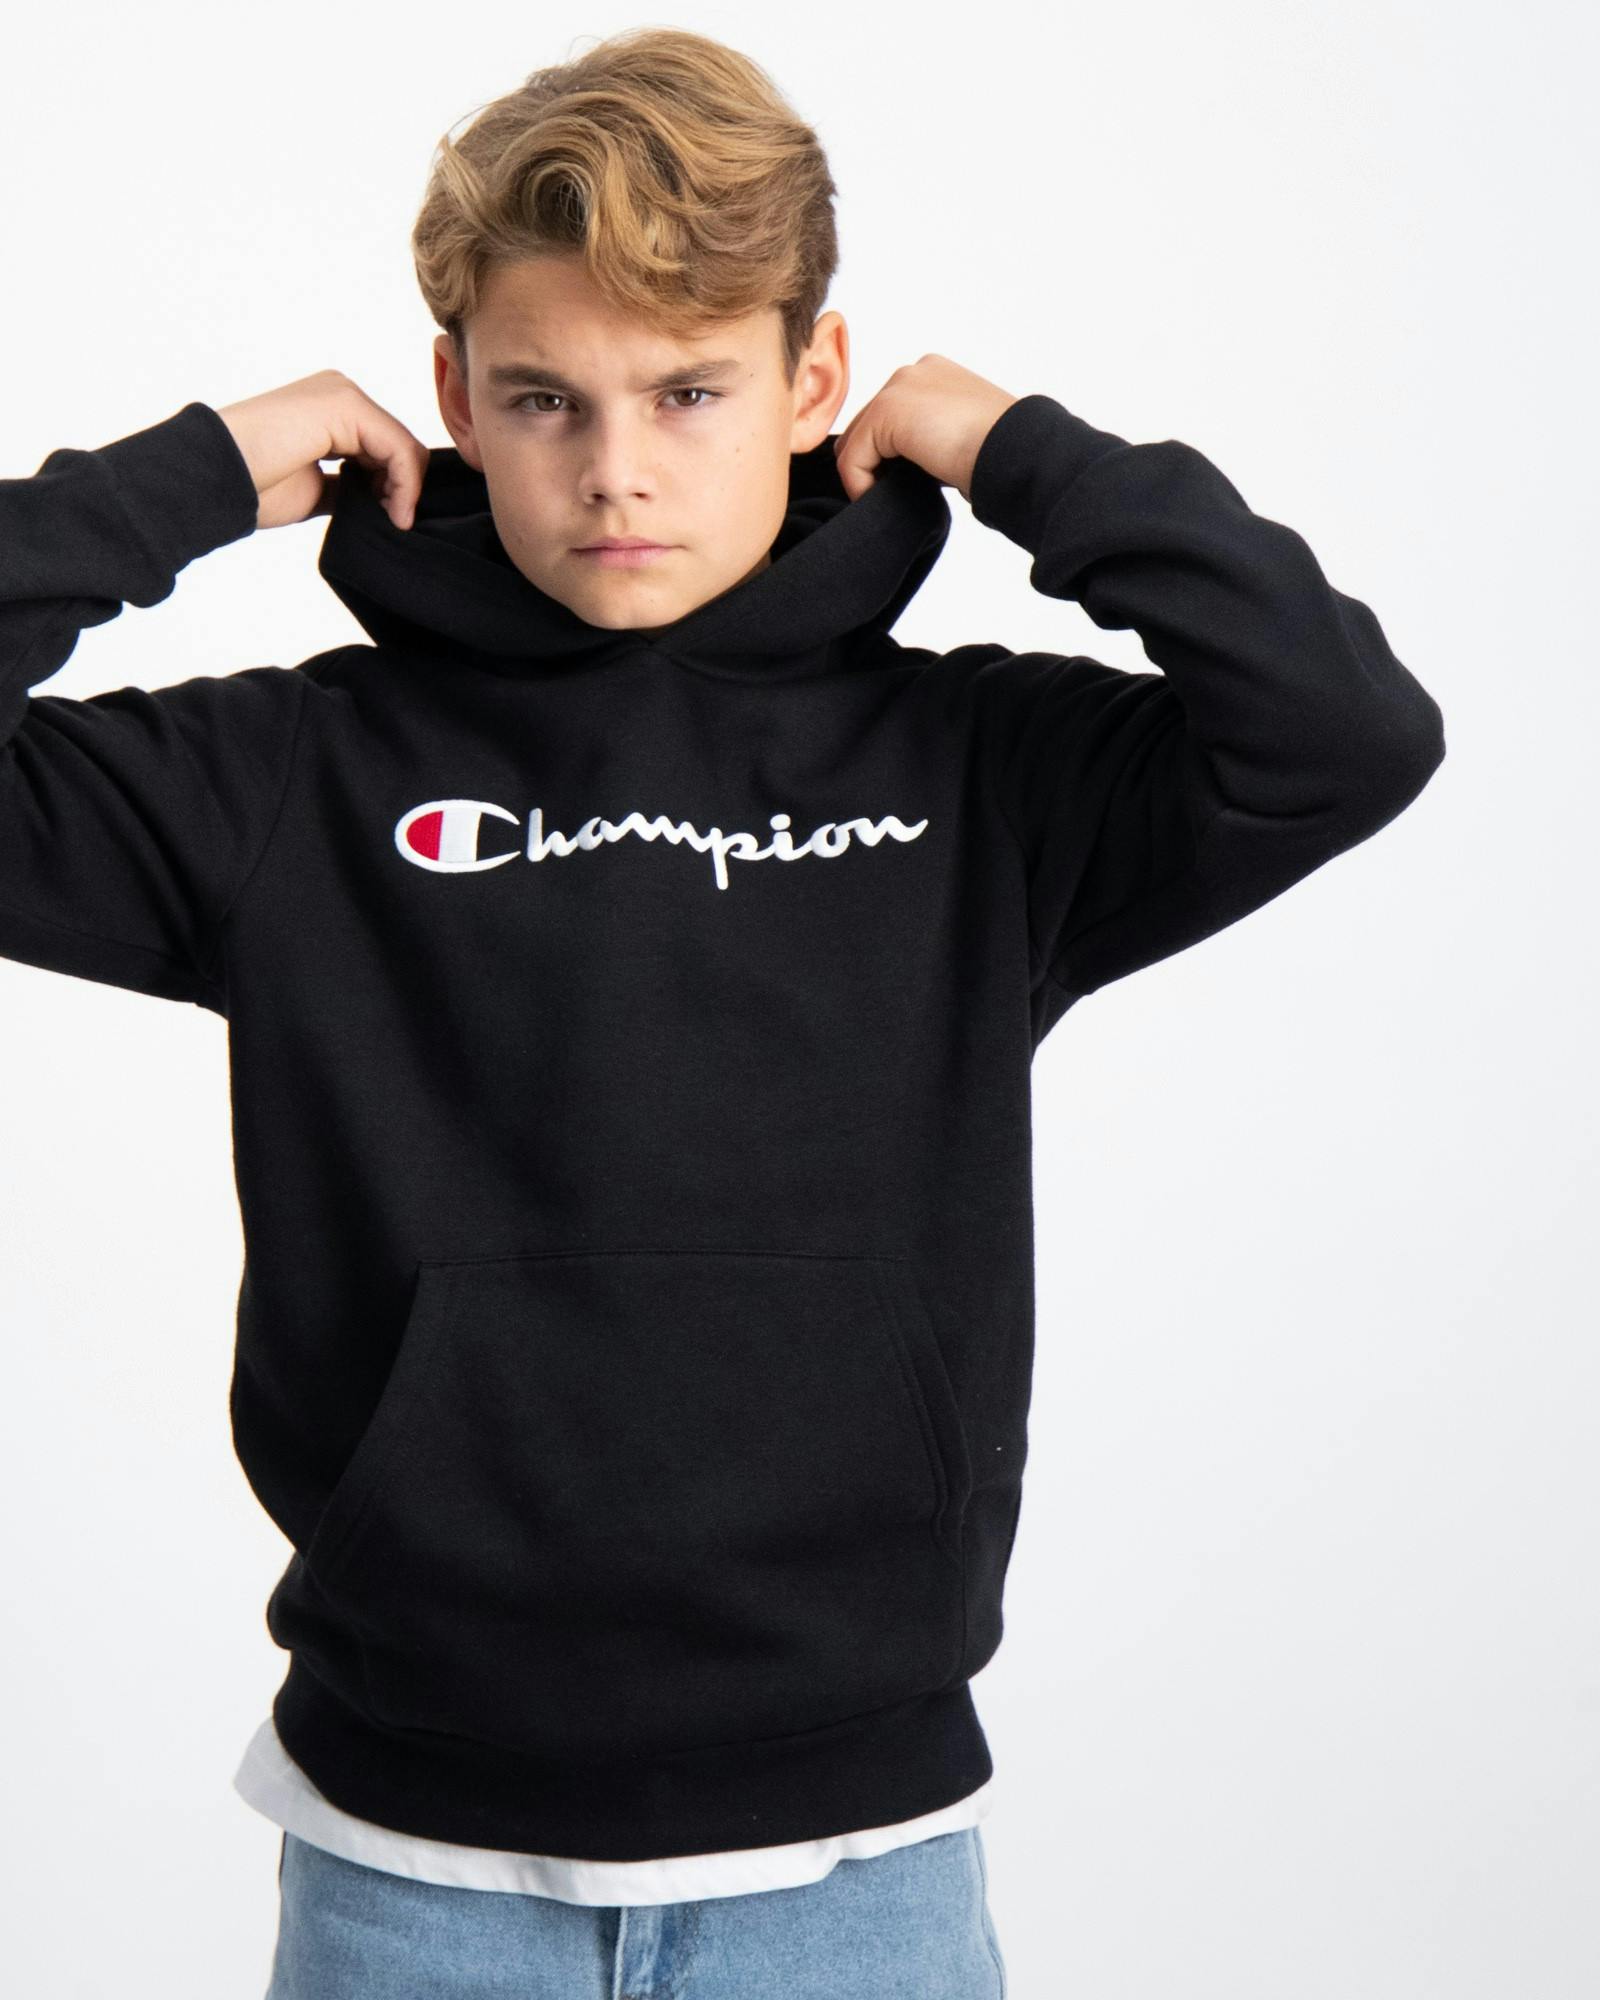 Angebot aussprechen Schwarz Hooded Sweatshirt für Store Kids Jungen | Brand